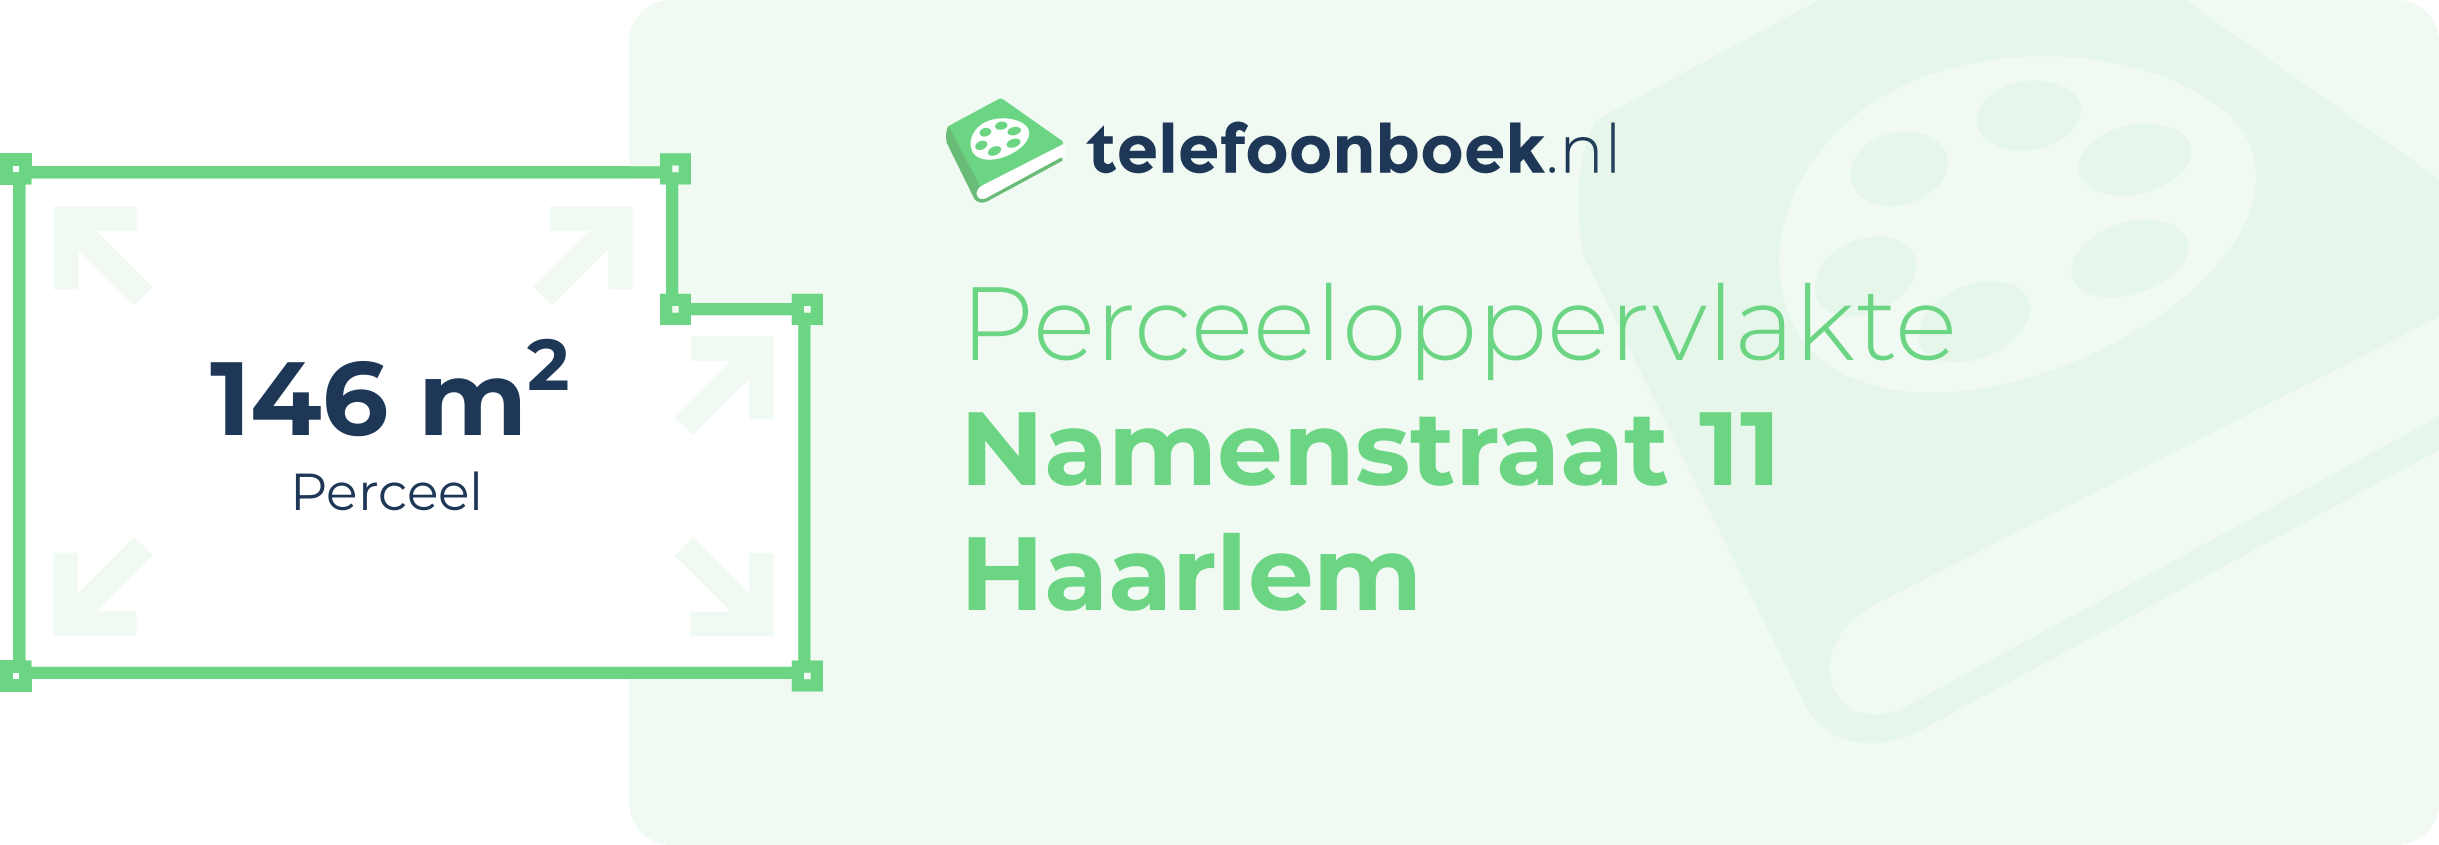 Perceeloppervlakte Namenstraat 11 Haarlem